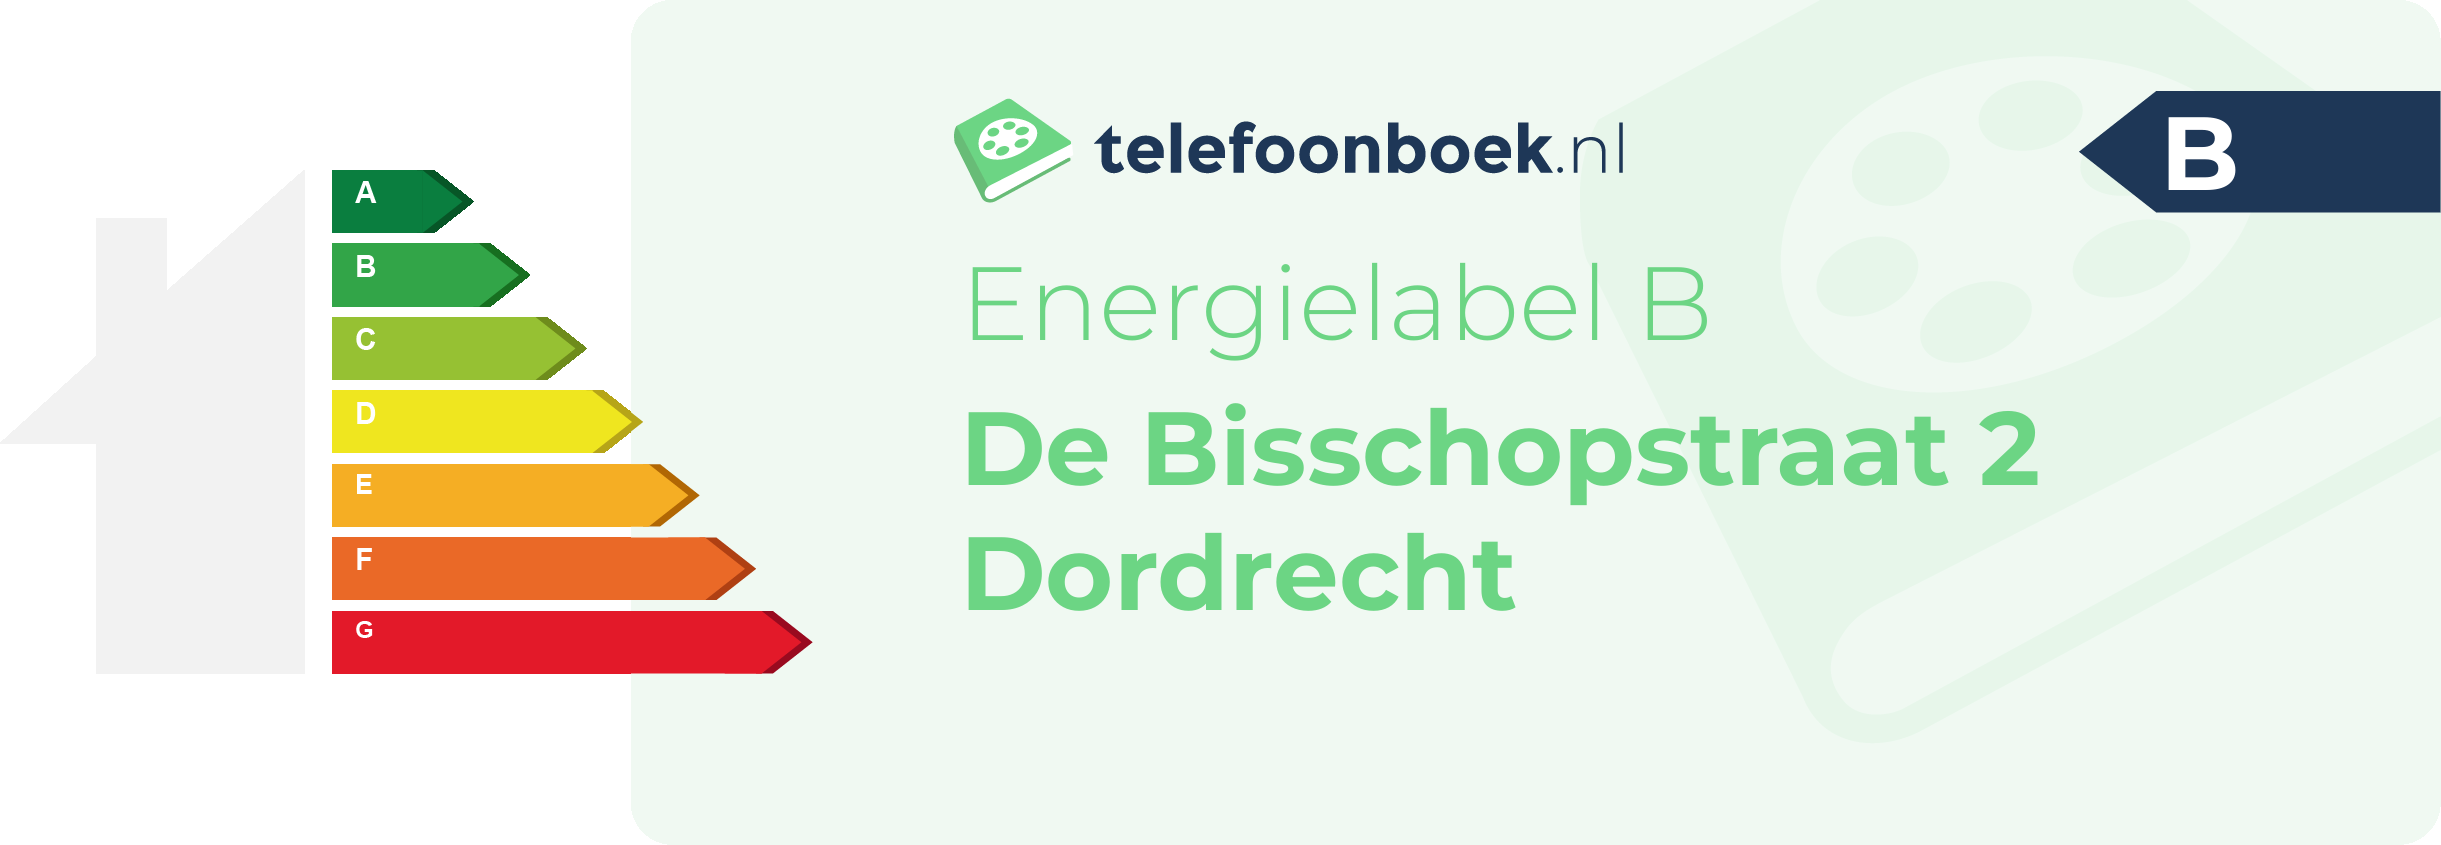 Energielabel De Bisschopstraat 2 Dordrecht